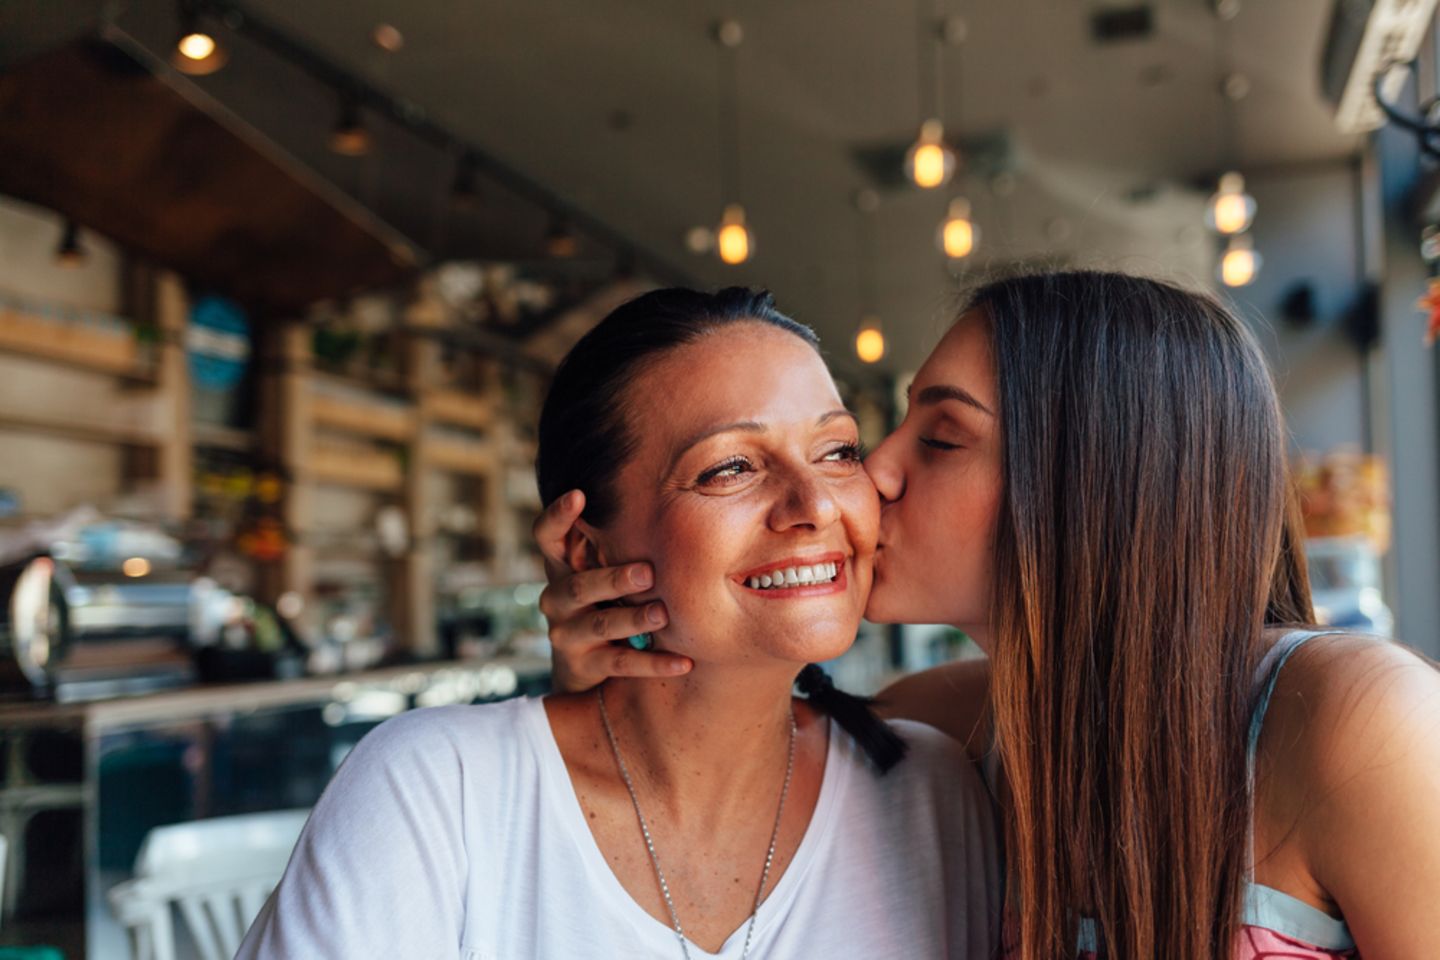 Mutter-Tochter-Tattoo: Tochter küsst ihre Mutter auf die Wange